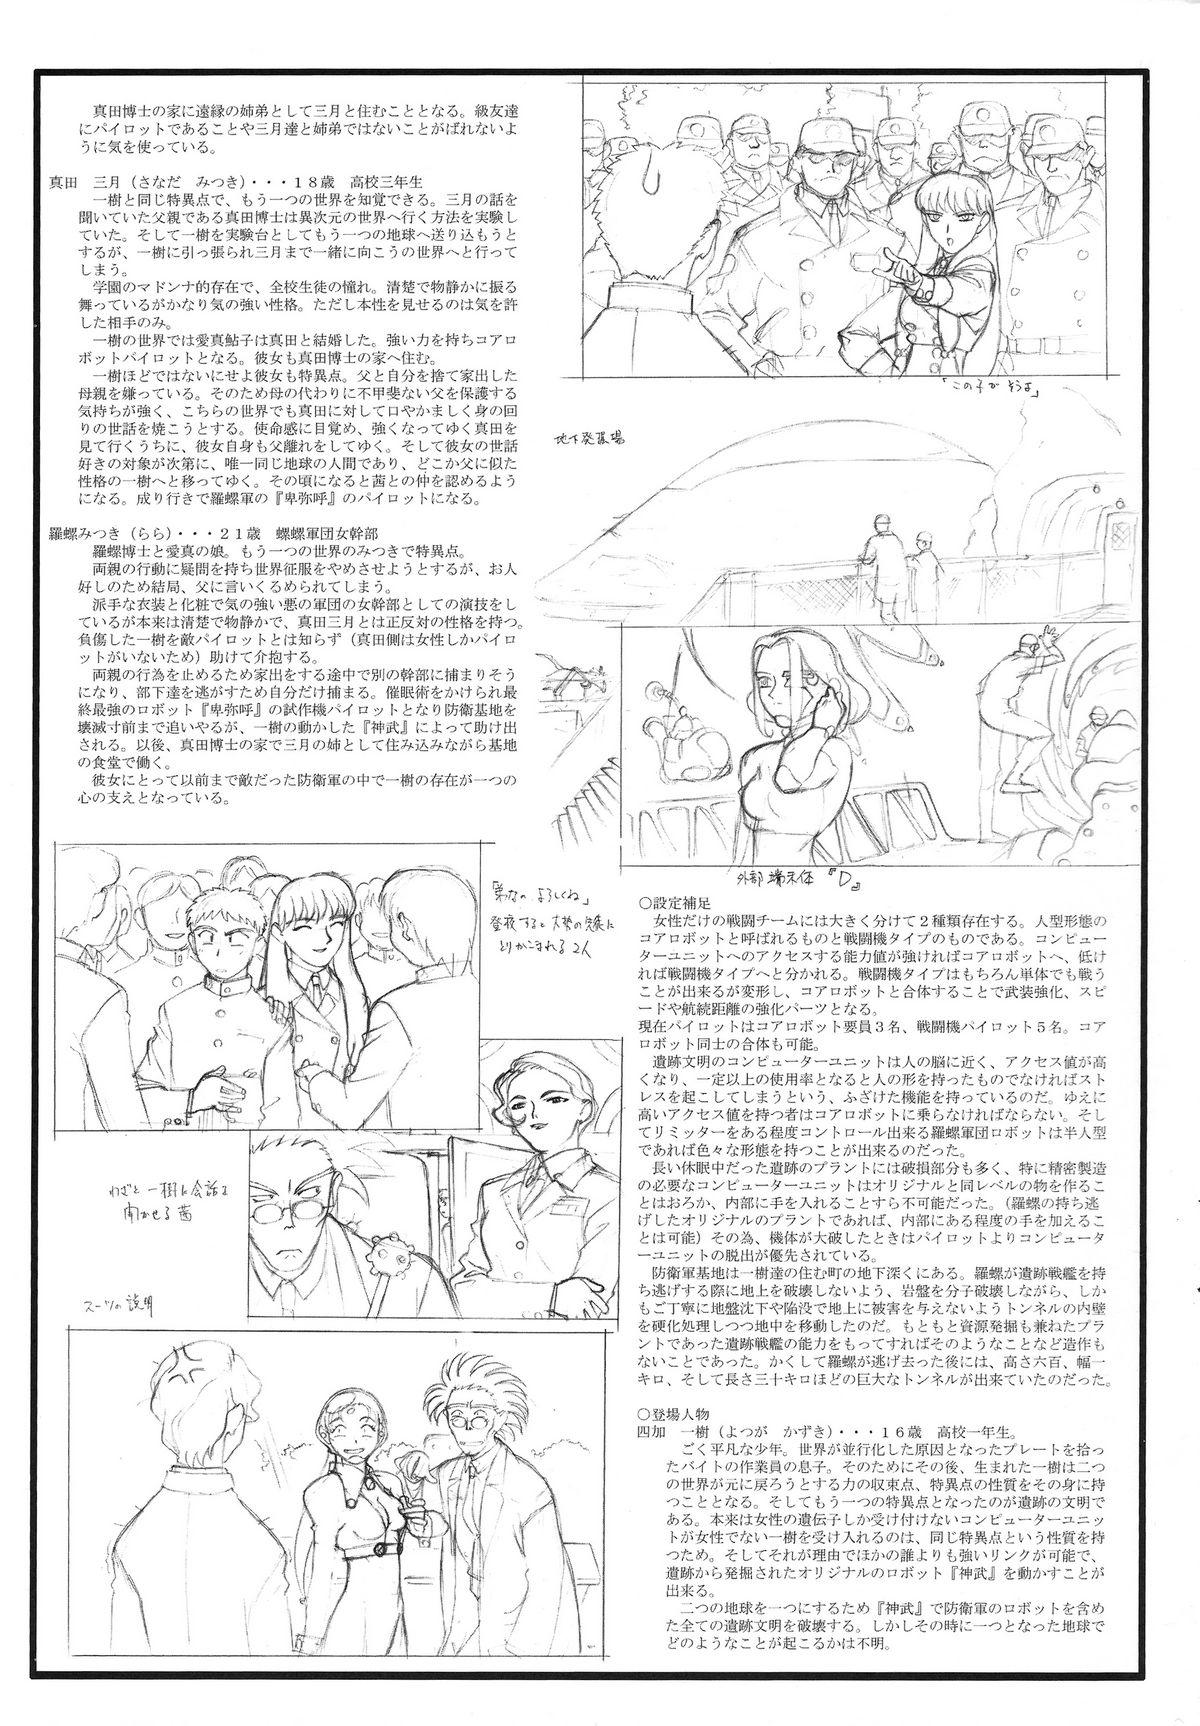 Assfucked Omatsuri Zenjitsu no Yoru Heisei Ban 3 - Dual parallel trouble adventure Spaceship agga ruter Nut - Page 5